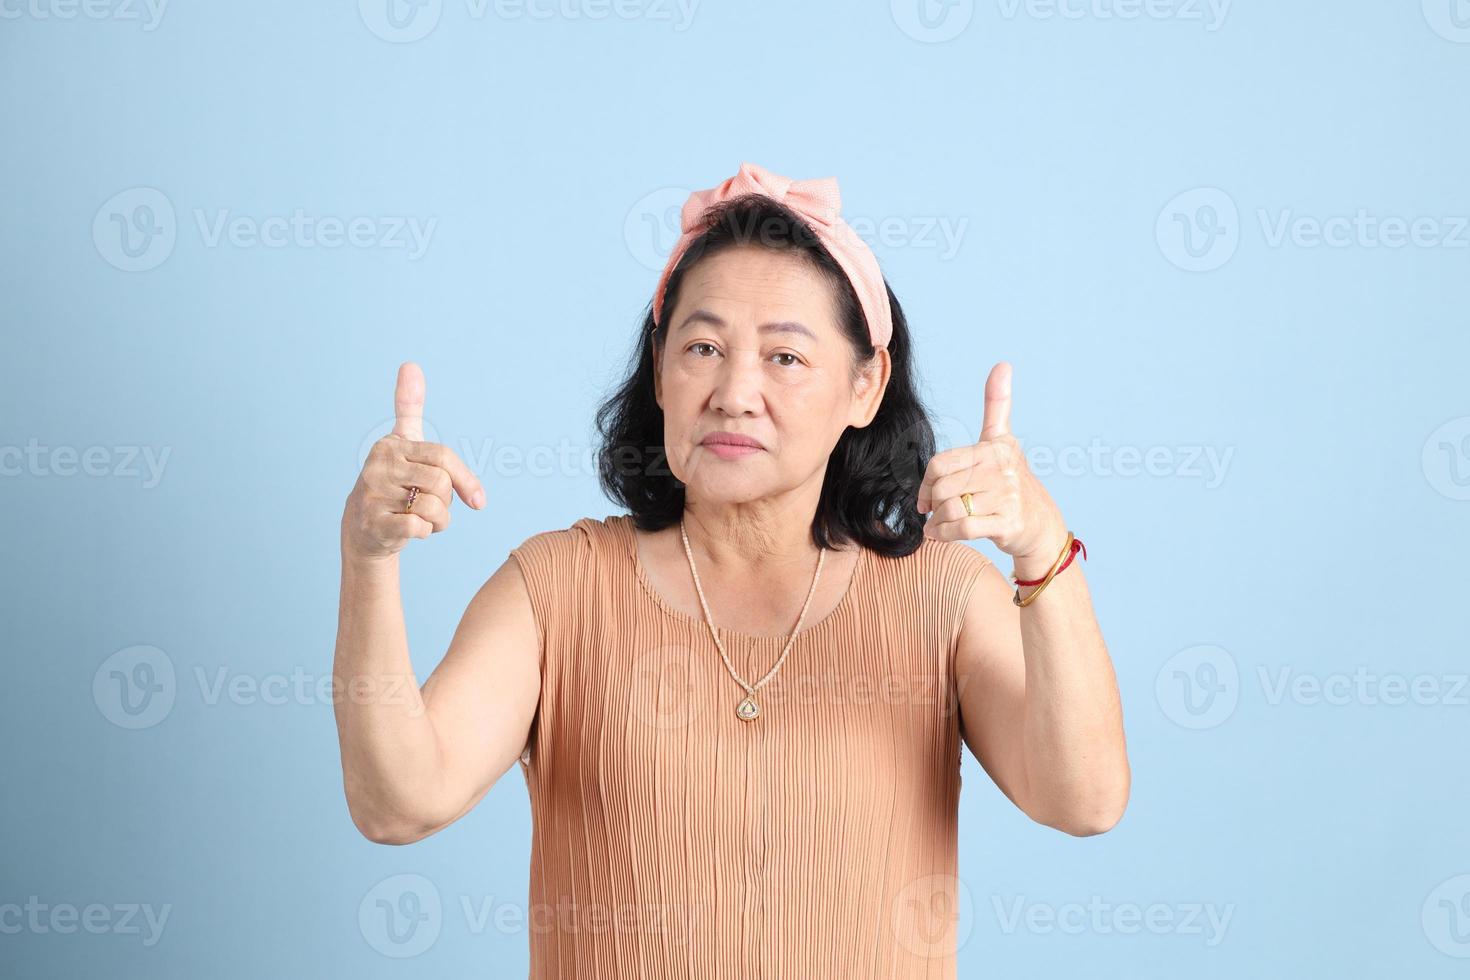 mulher asiática sênior foto